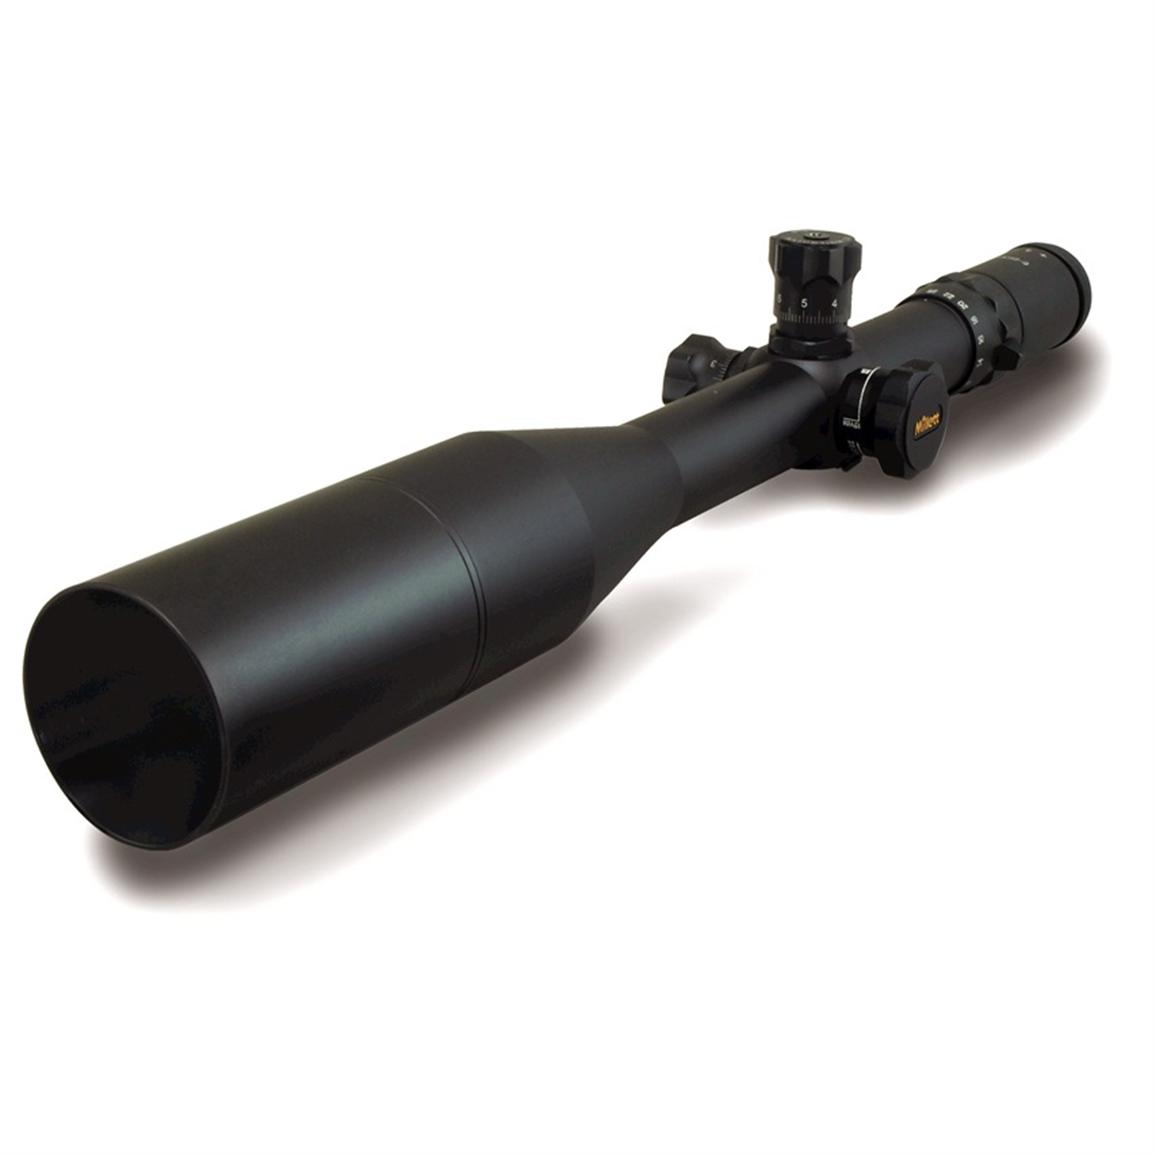 Millett® 6 25x56 Mm Lrs 1 Tactical Riflescope 210121 Rifle